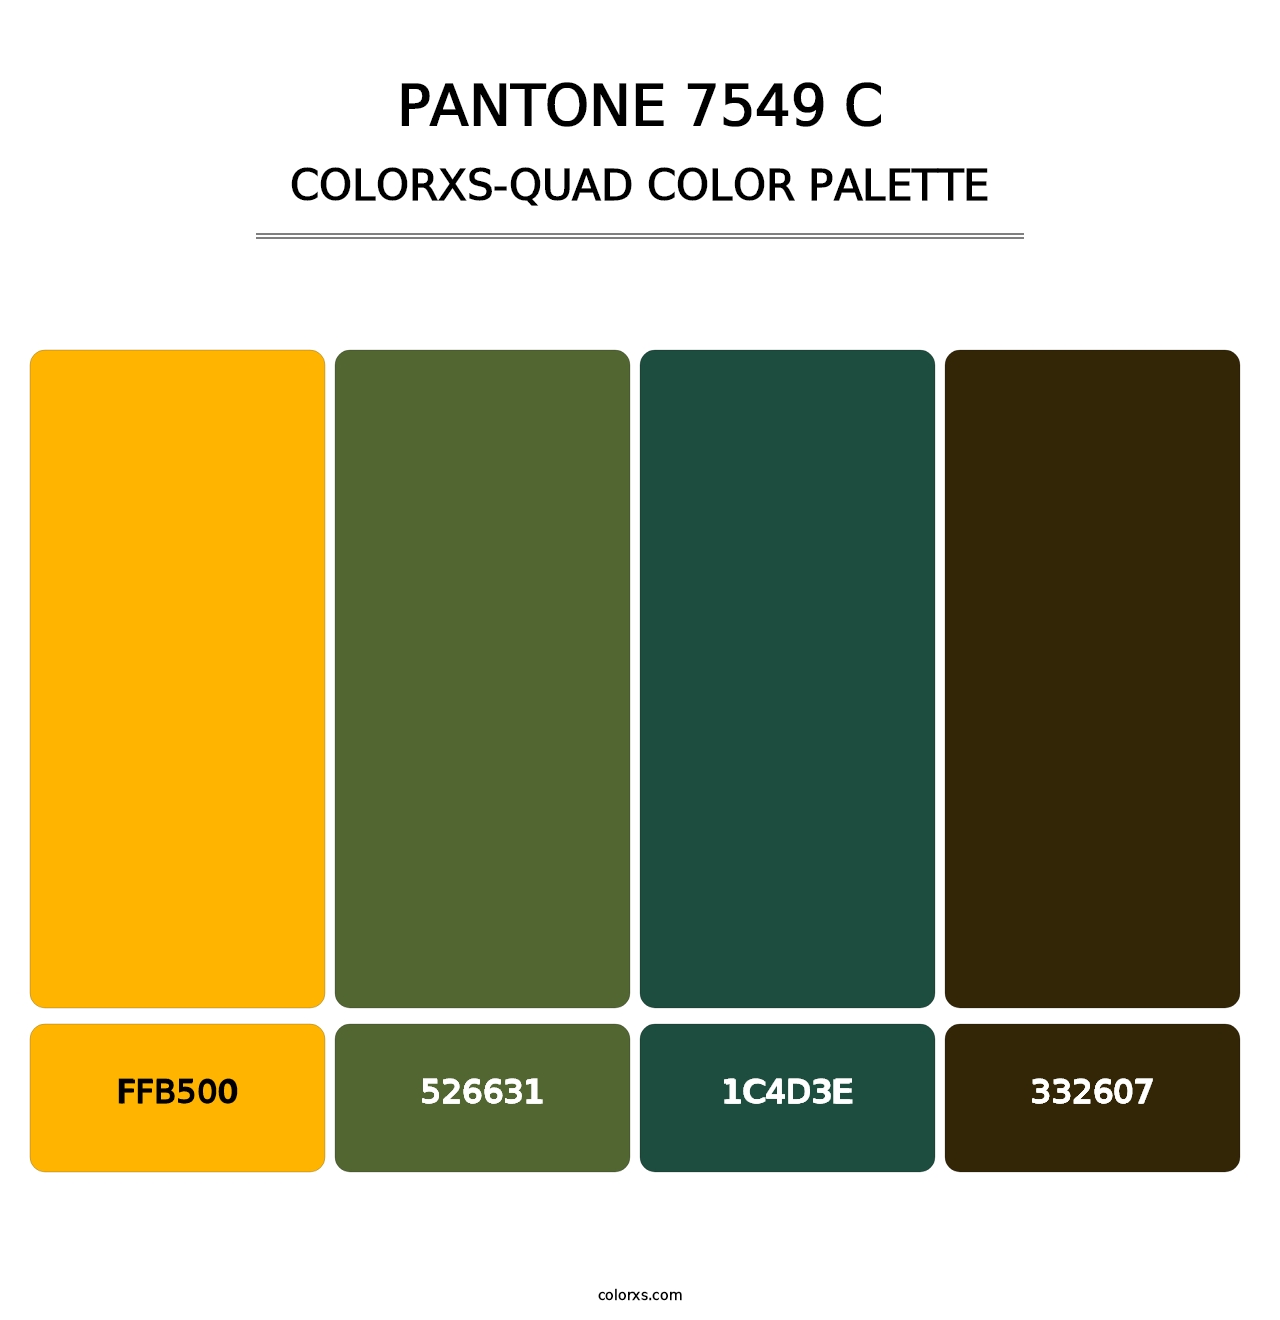 PANTONE 7549 C - Colorxs Quad Palette